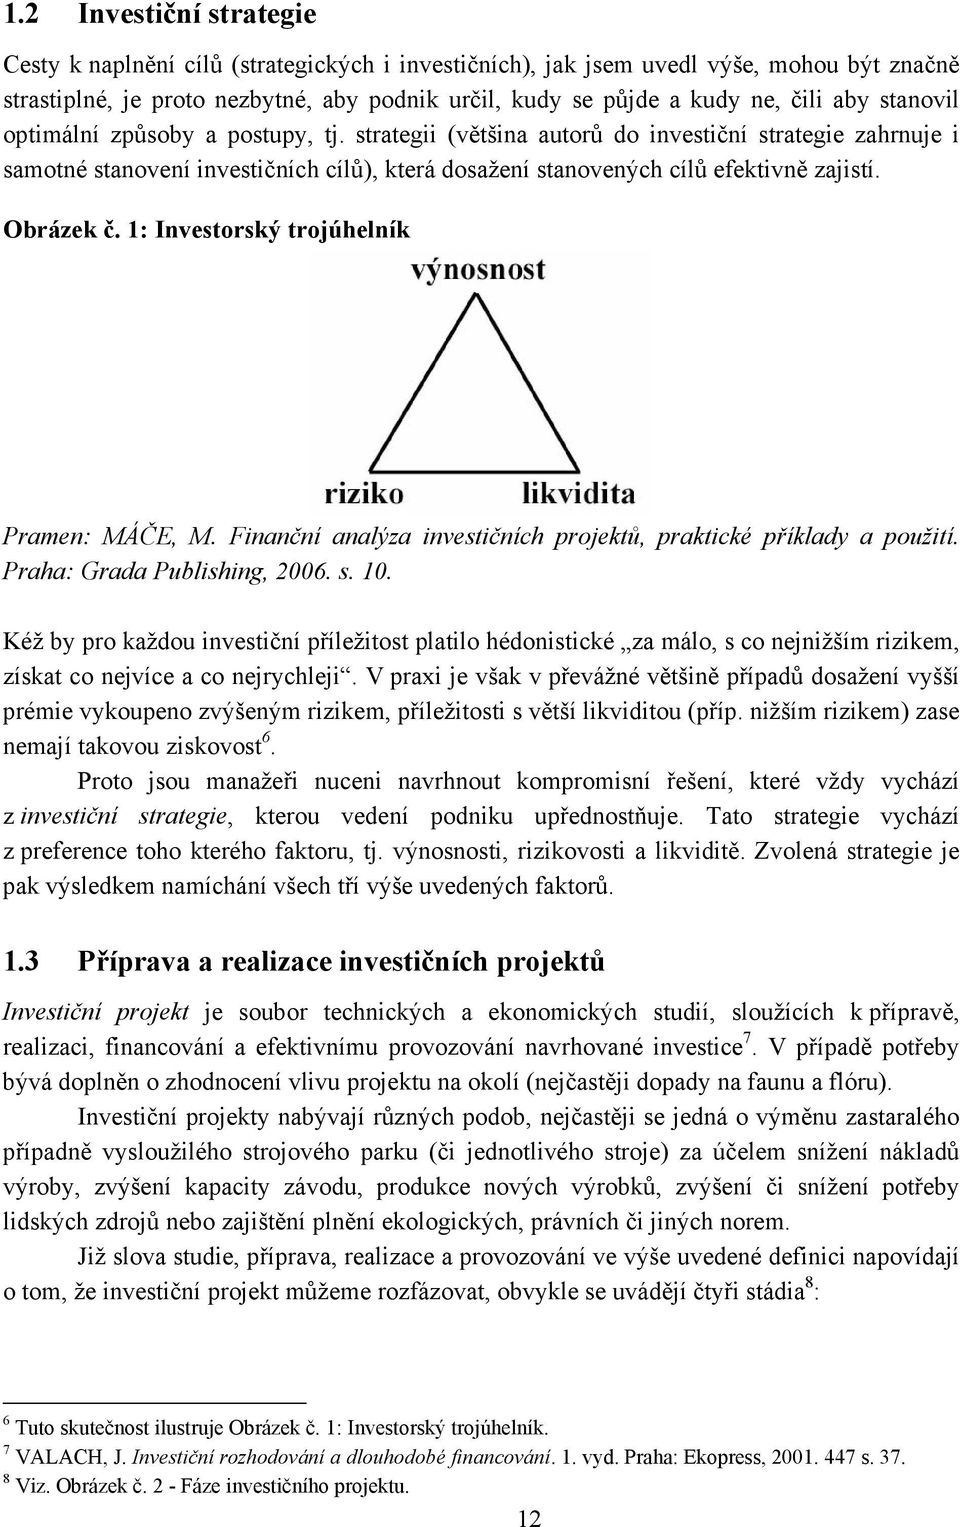 Obrázek č. 1: Investorský trojúhelník Pramen: MÁČE, M. Finanční analýza investičních projektů, praktické příklady a použití. Praha: Grada Publishing, 2006. s. 10.